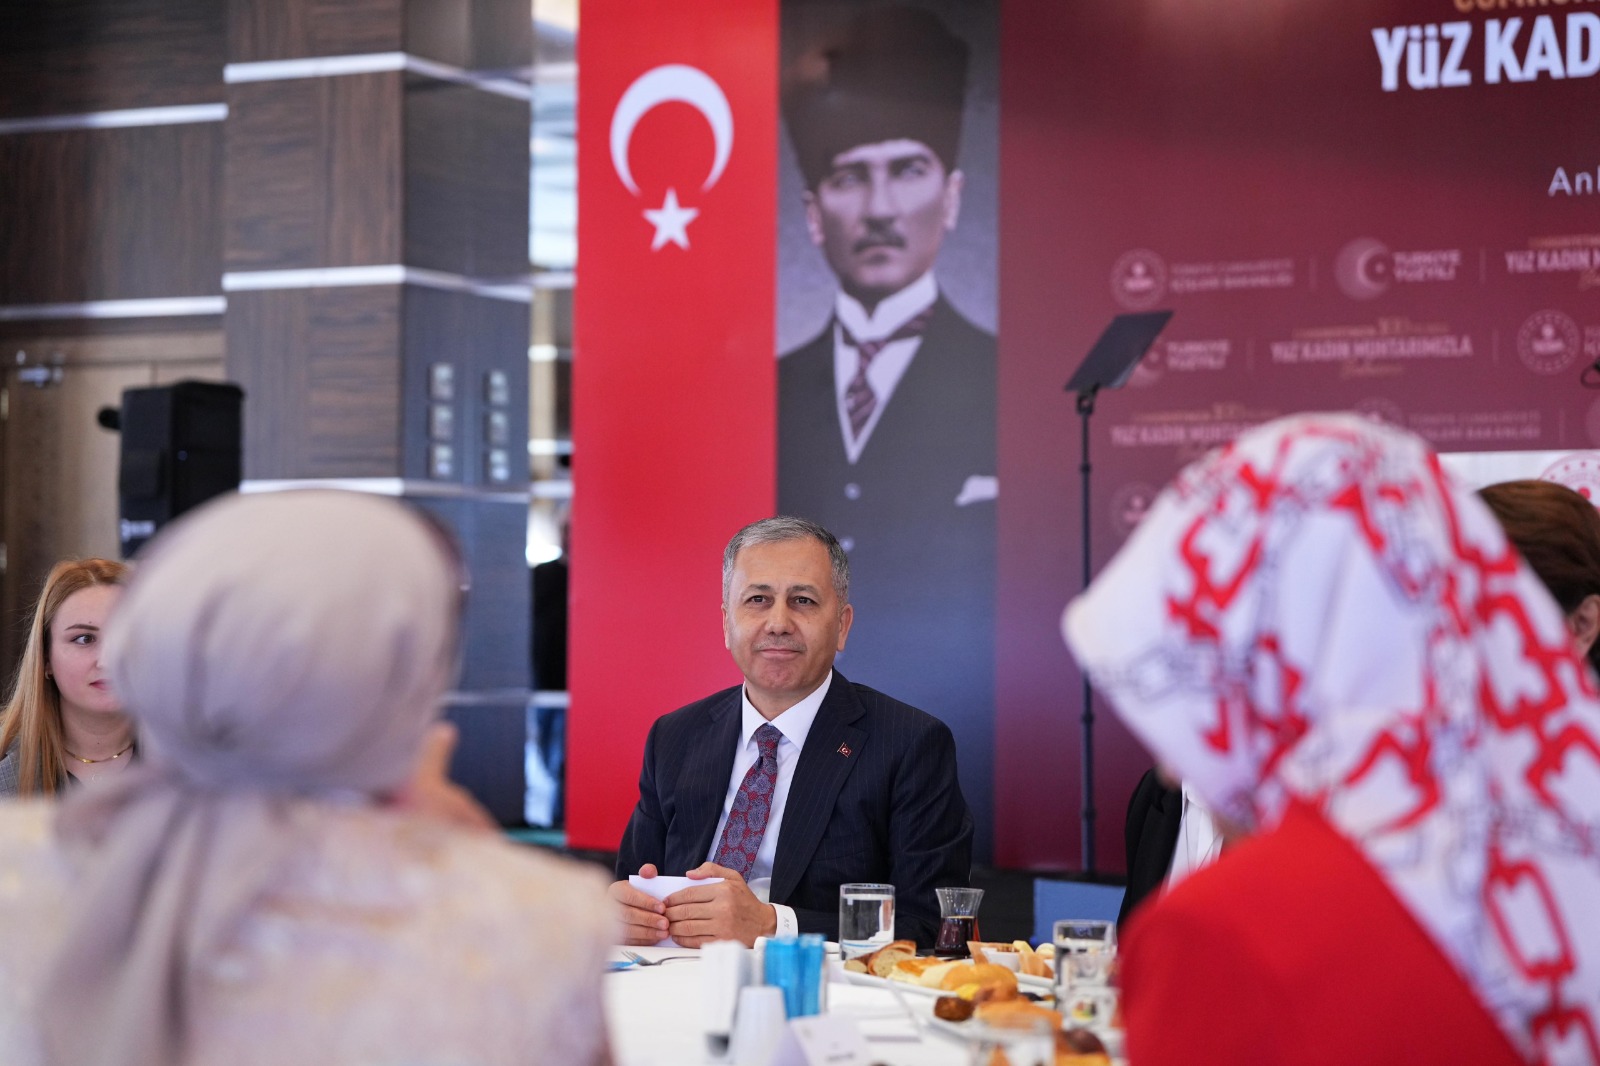 İçişleri Bakanı Ali Yerlikaya, Cumhuriyetimizin 100. Yılında Yüz Kadın Muhtarla Buluşma Programına Katıldı